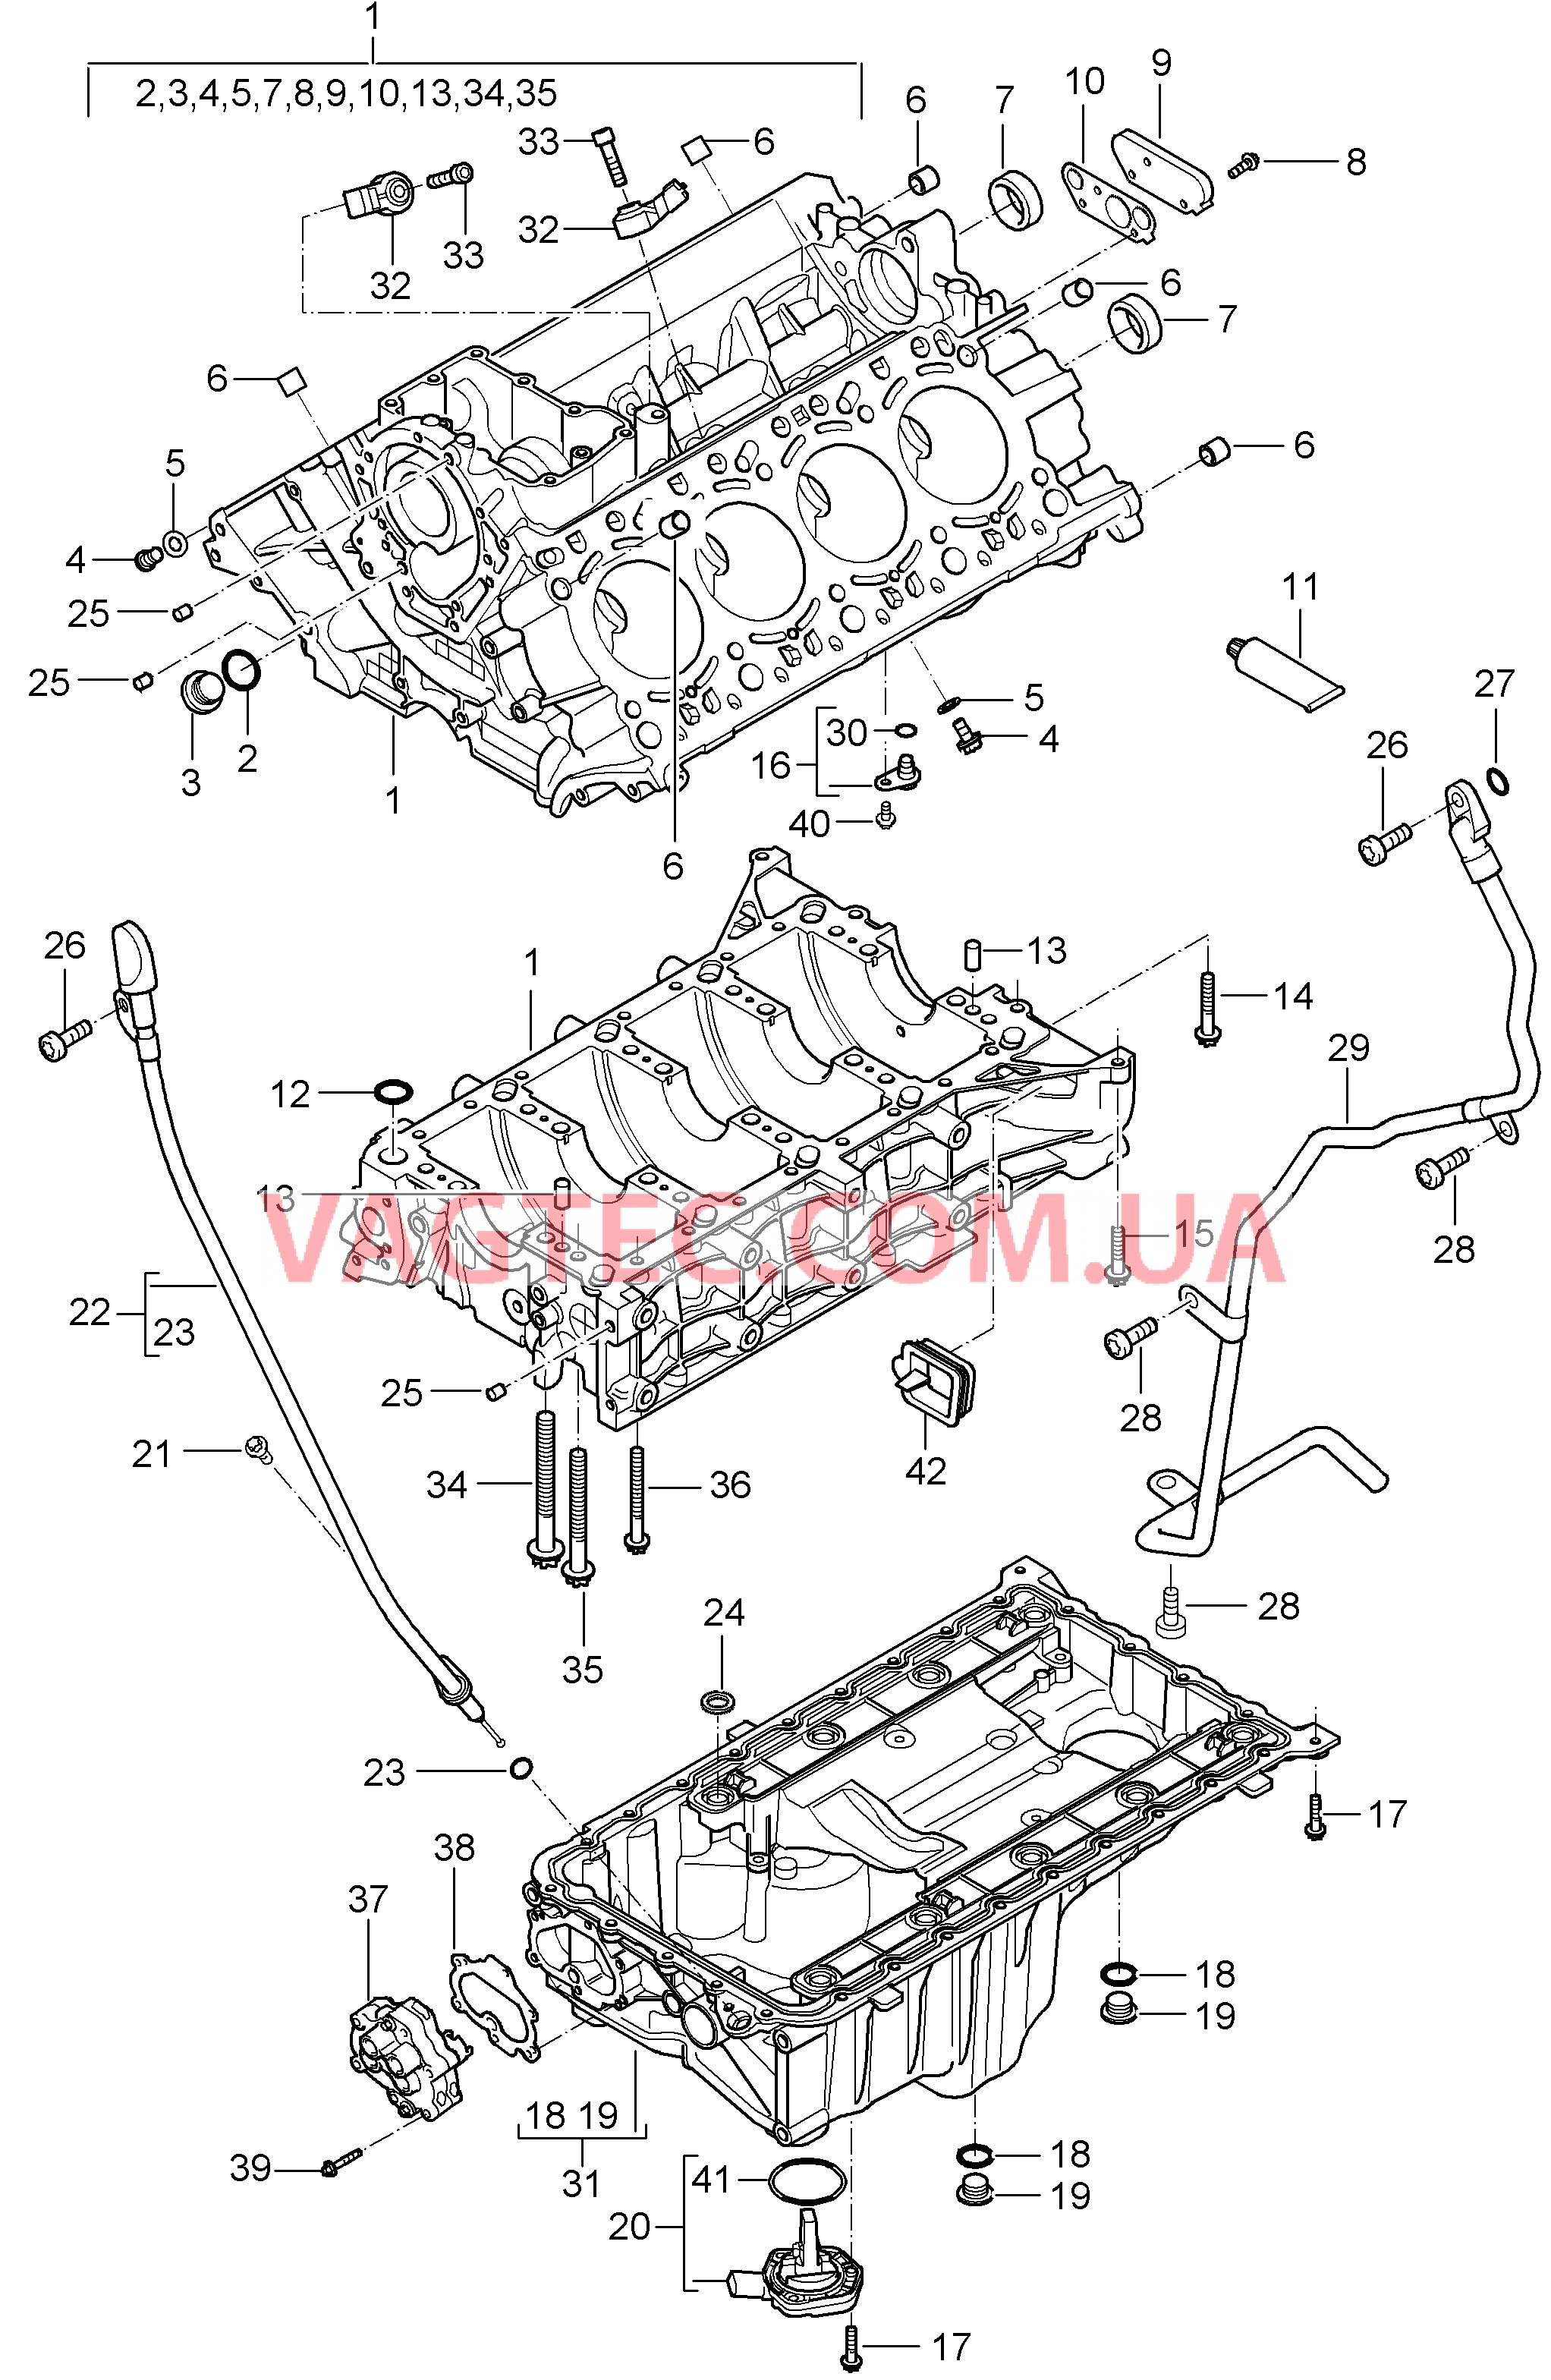 101-005 Кривошипный механизм, Отдельные детали
						
						M48.00/50 для PORSCHE Cayenne 2003-2006USA